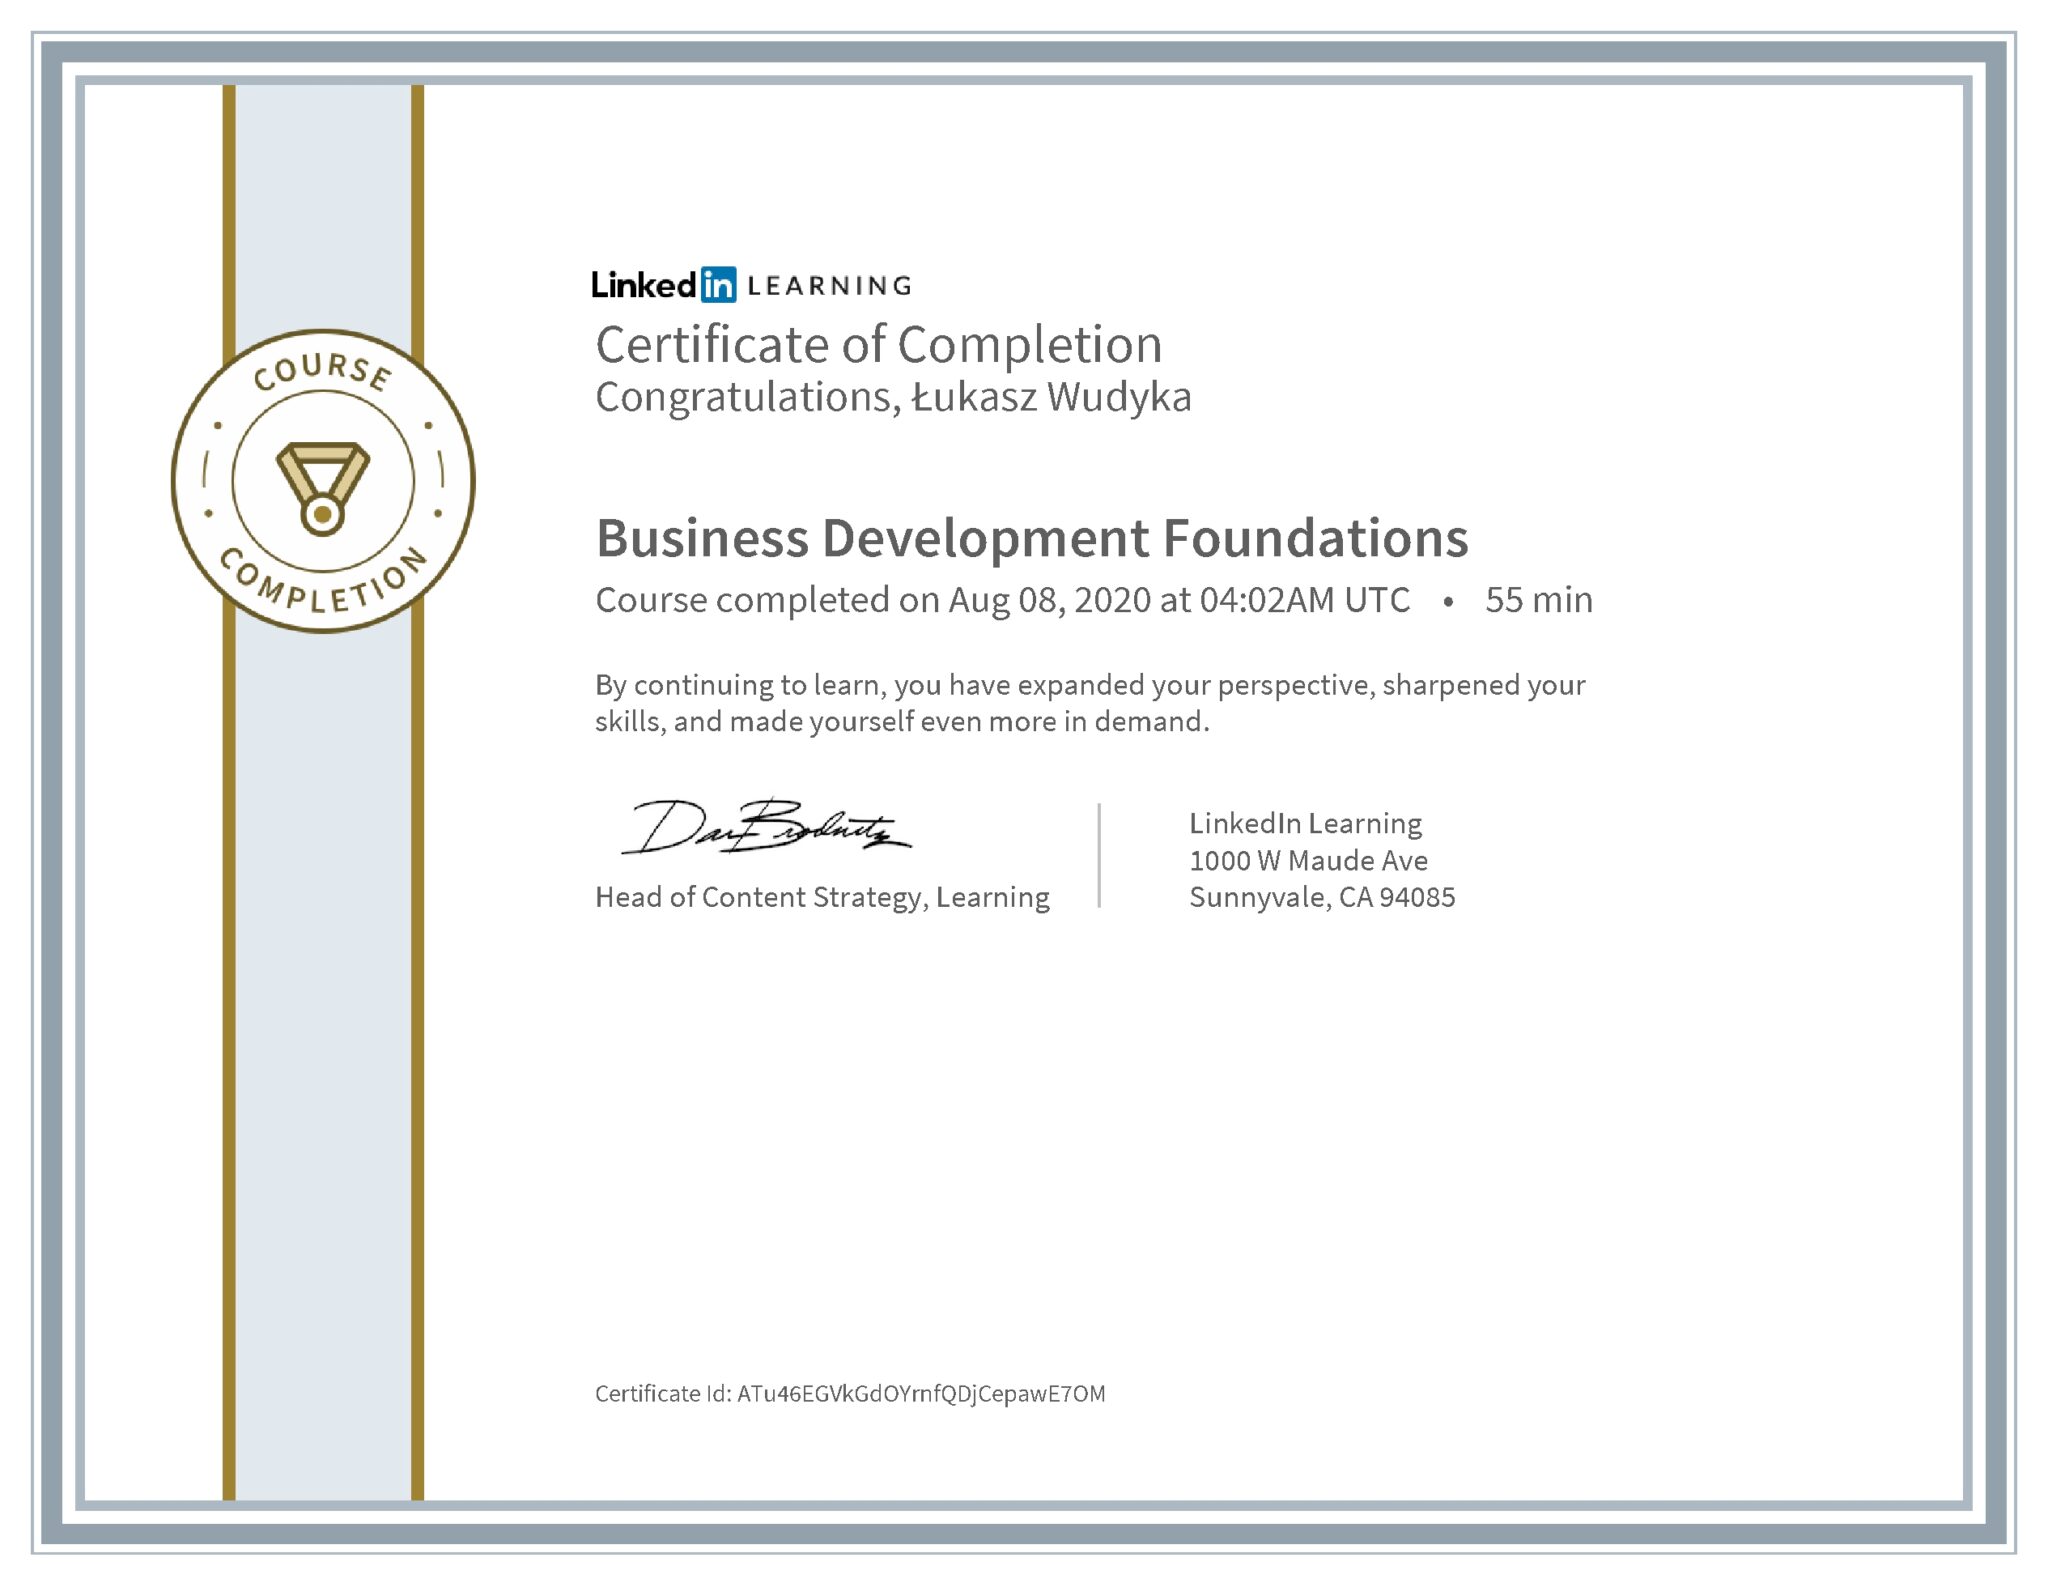 Łukasz Wudyka certyfikat LinkedIn Business Development Foundations